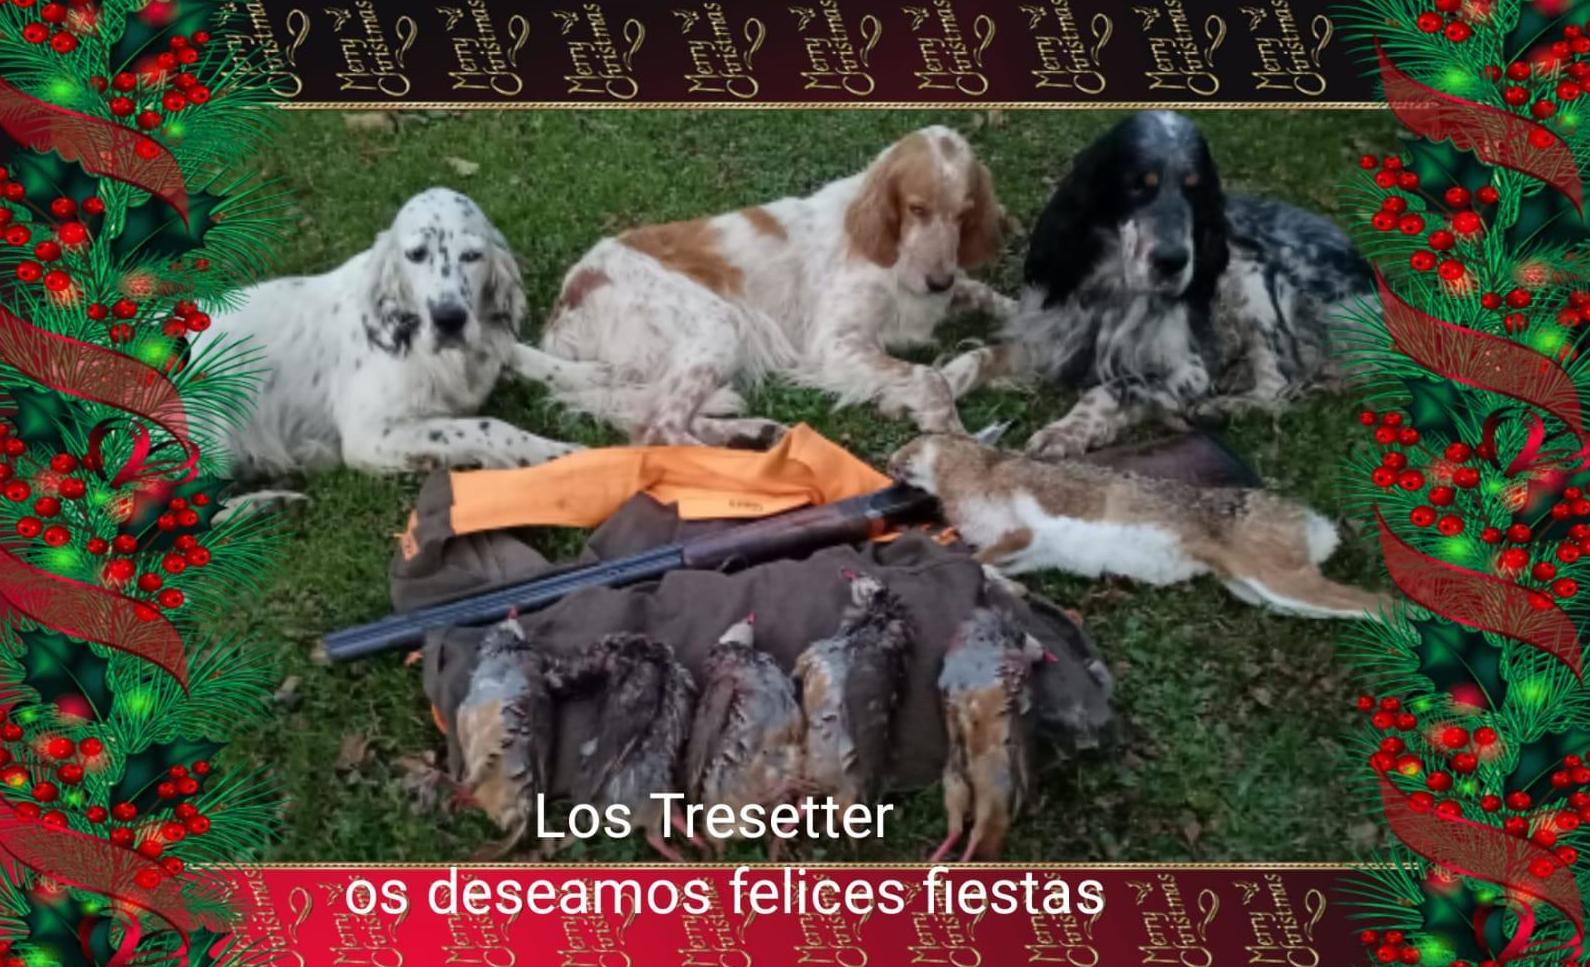 Foto 1 de venta de perros para la caza en Ponferrada | Los Tresetter